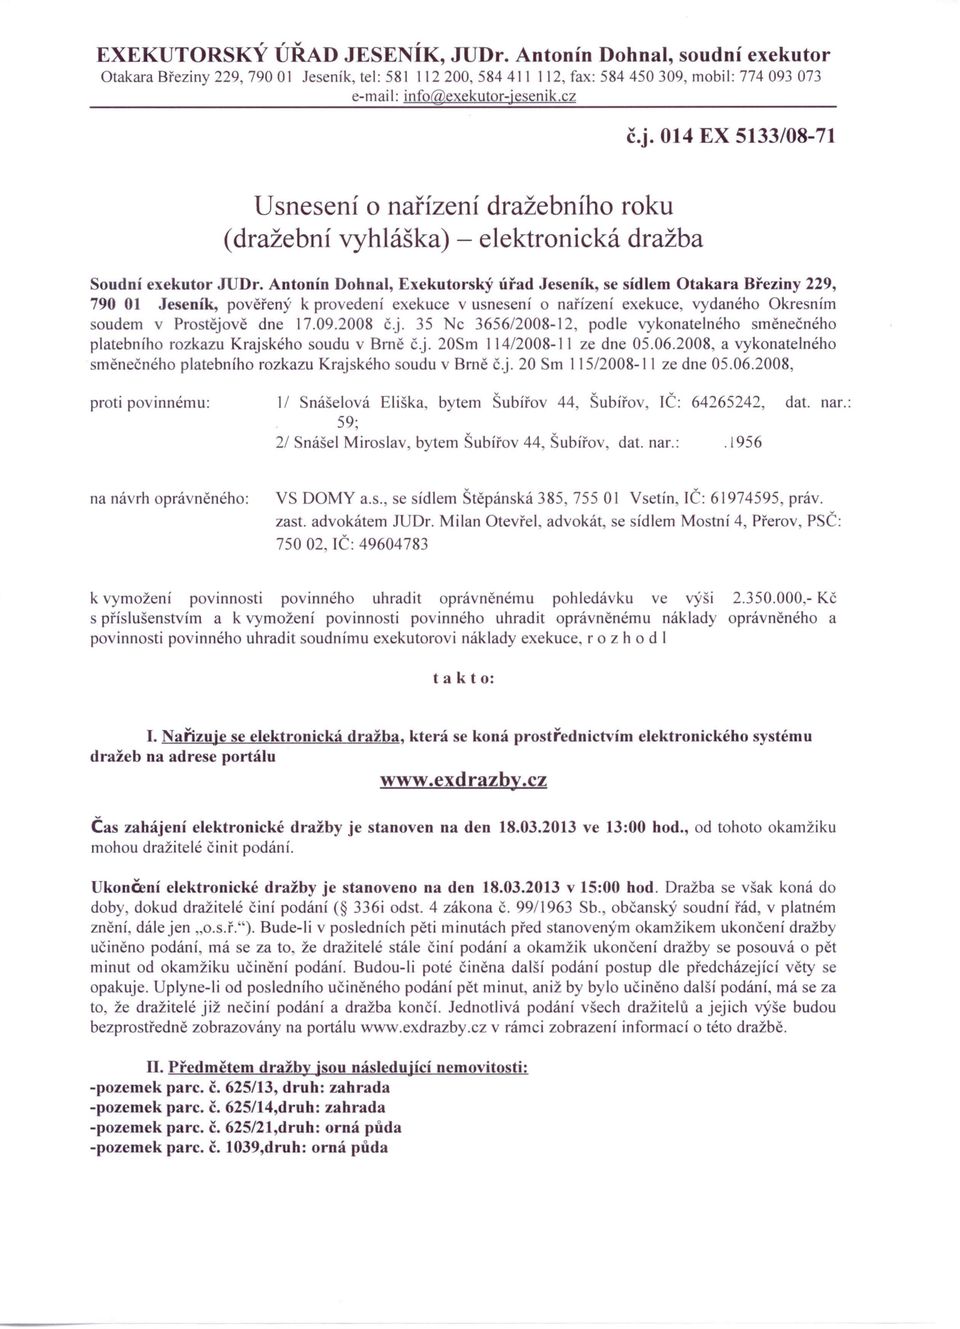 Antonín Dohnal, Exekutorský úřad Jeseník, se sídlem Otakara Březiny 229, 790 01 Jeseník, pověřený k provedení exekuce v usnesení o nařízení exekuce, vydaného Okresním soudem v Prostějově dne 17.09.